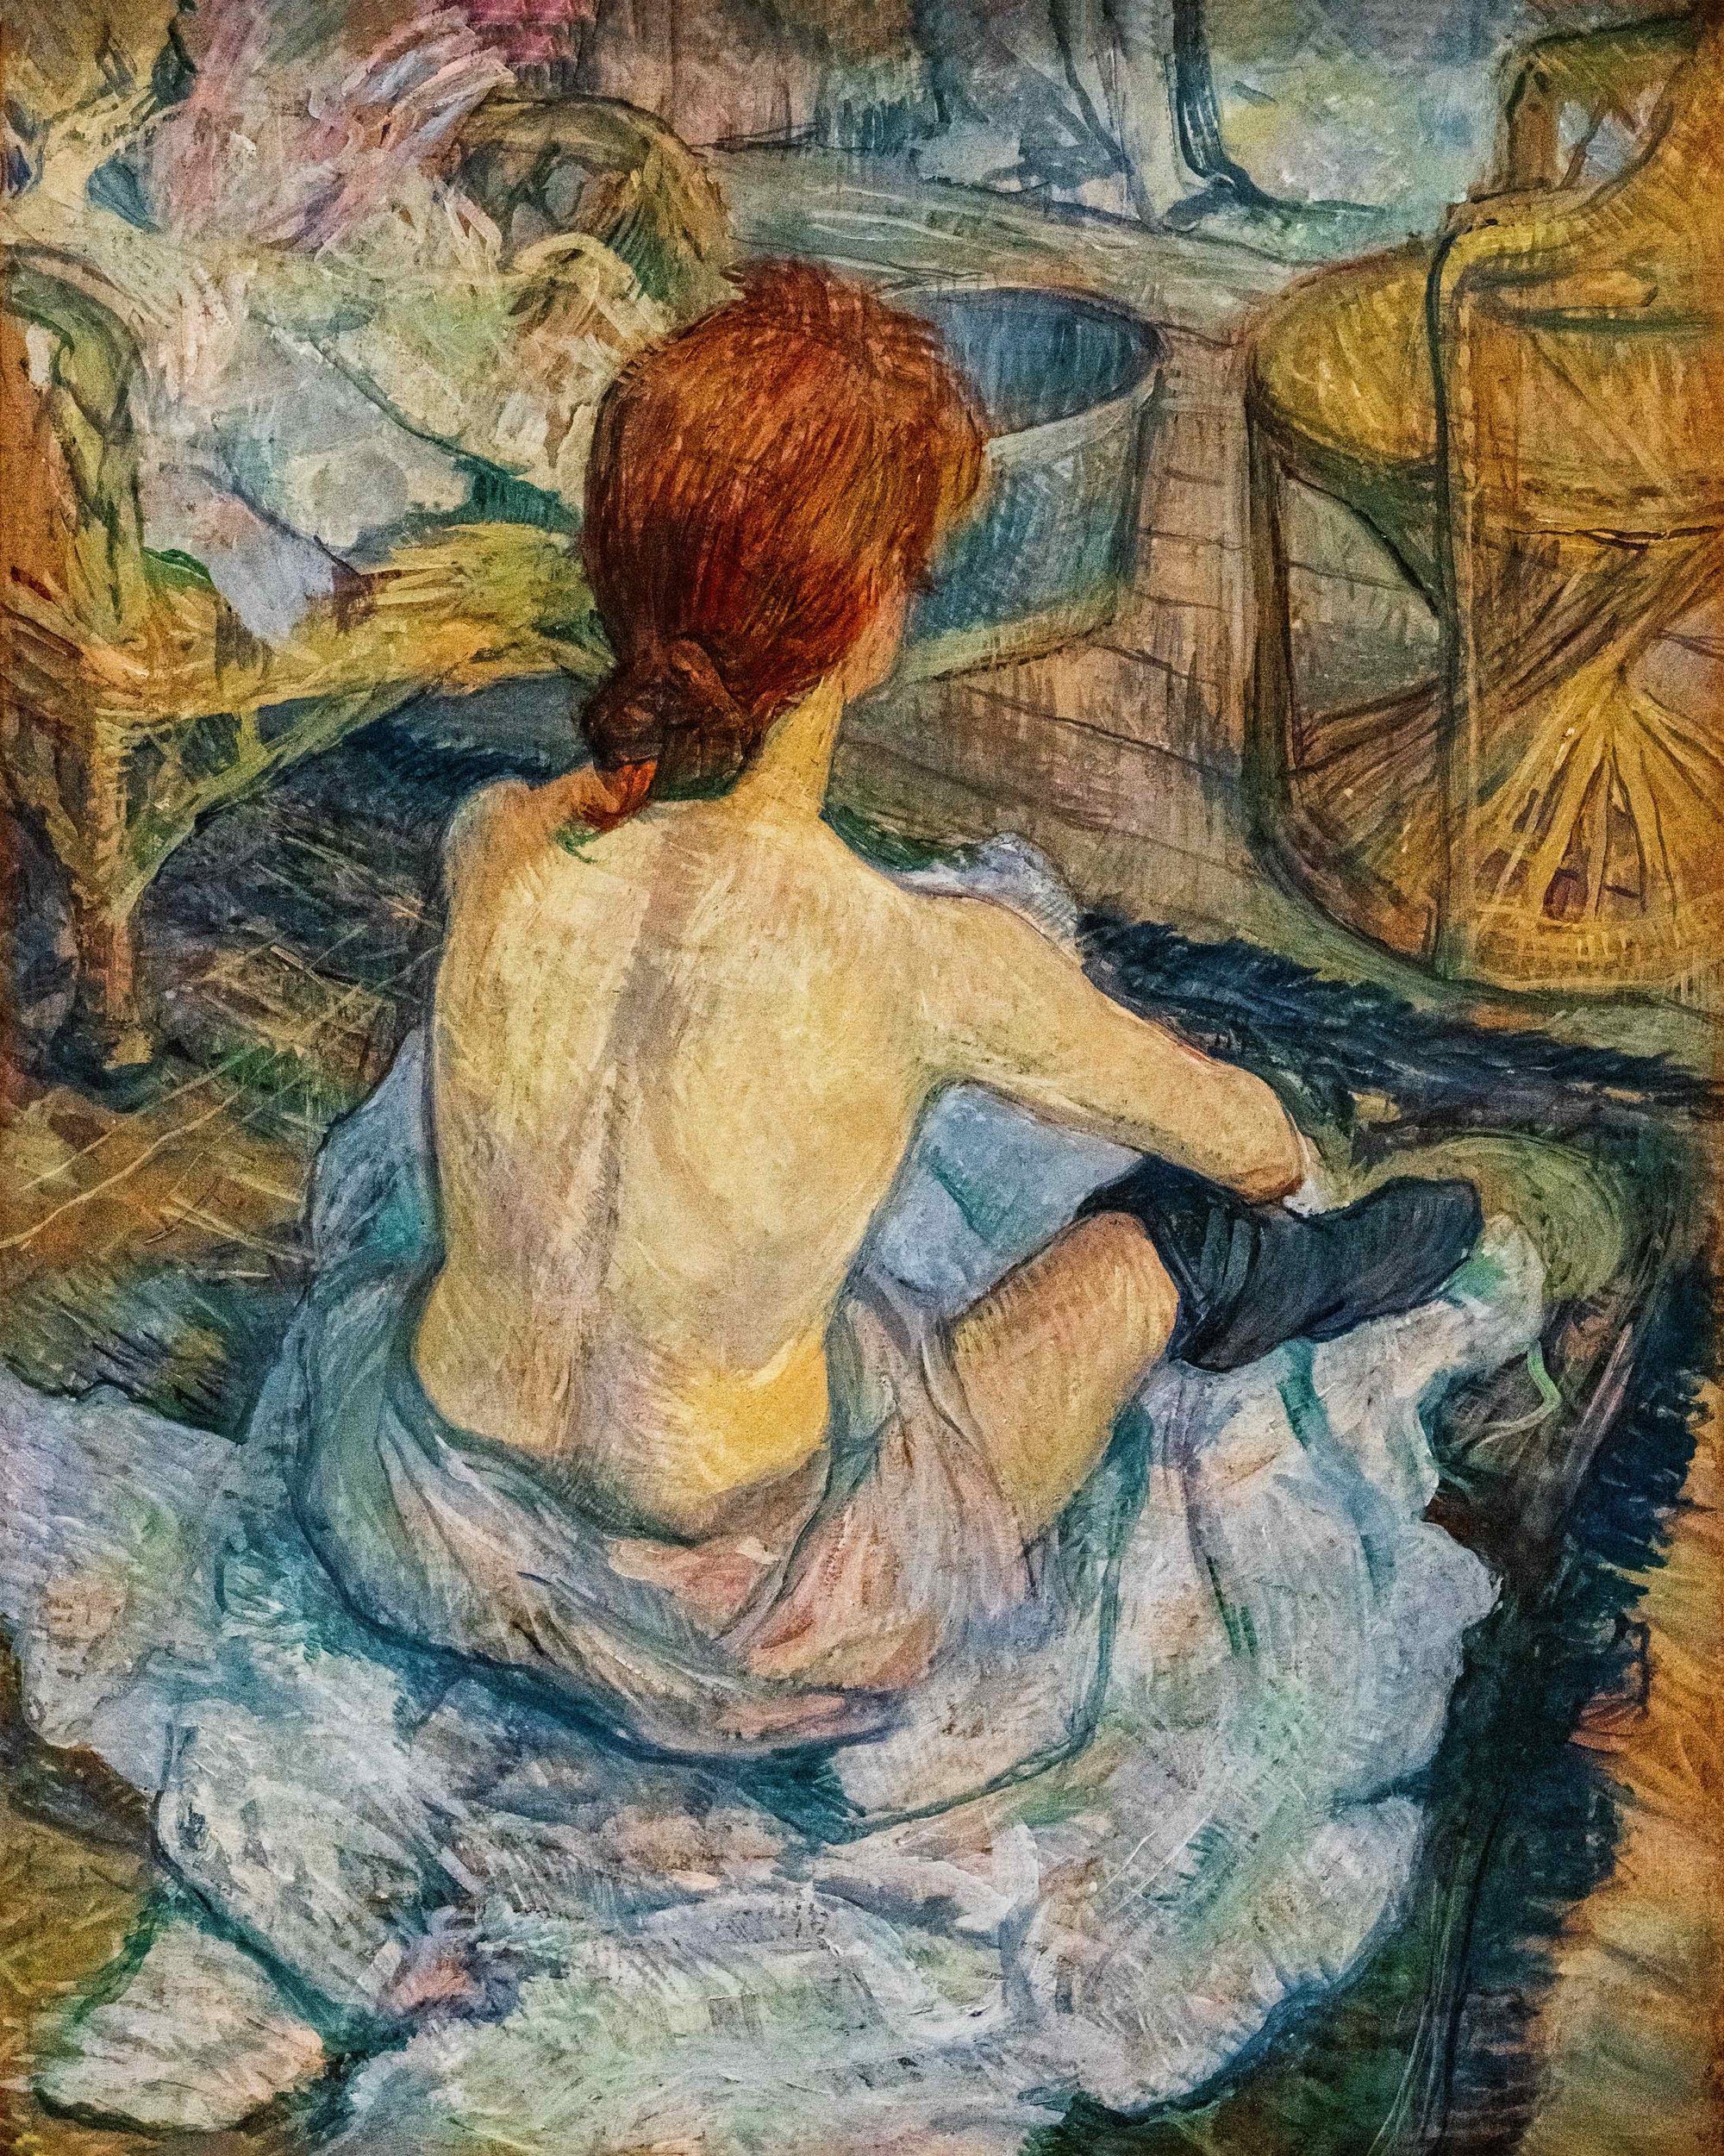 La Toilette, Henri de Toulouse Lautrec, 1889